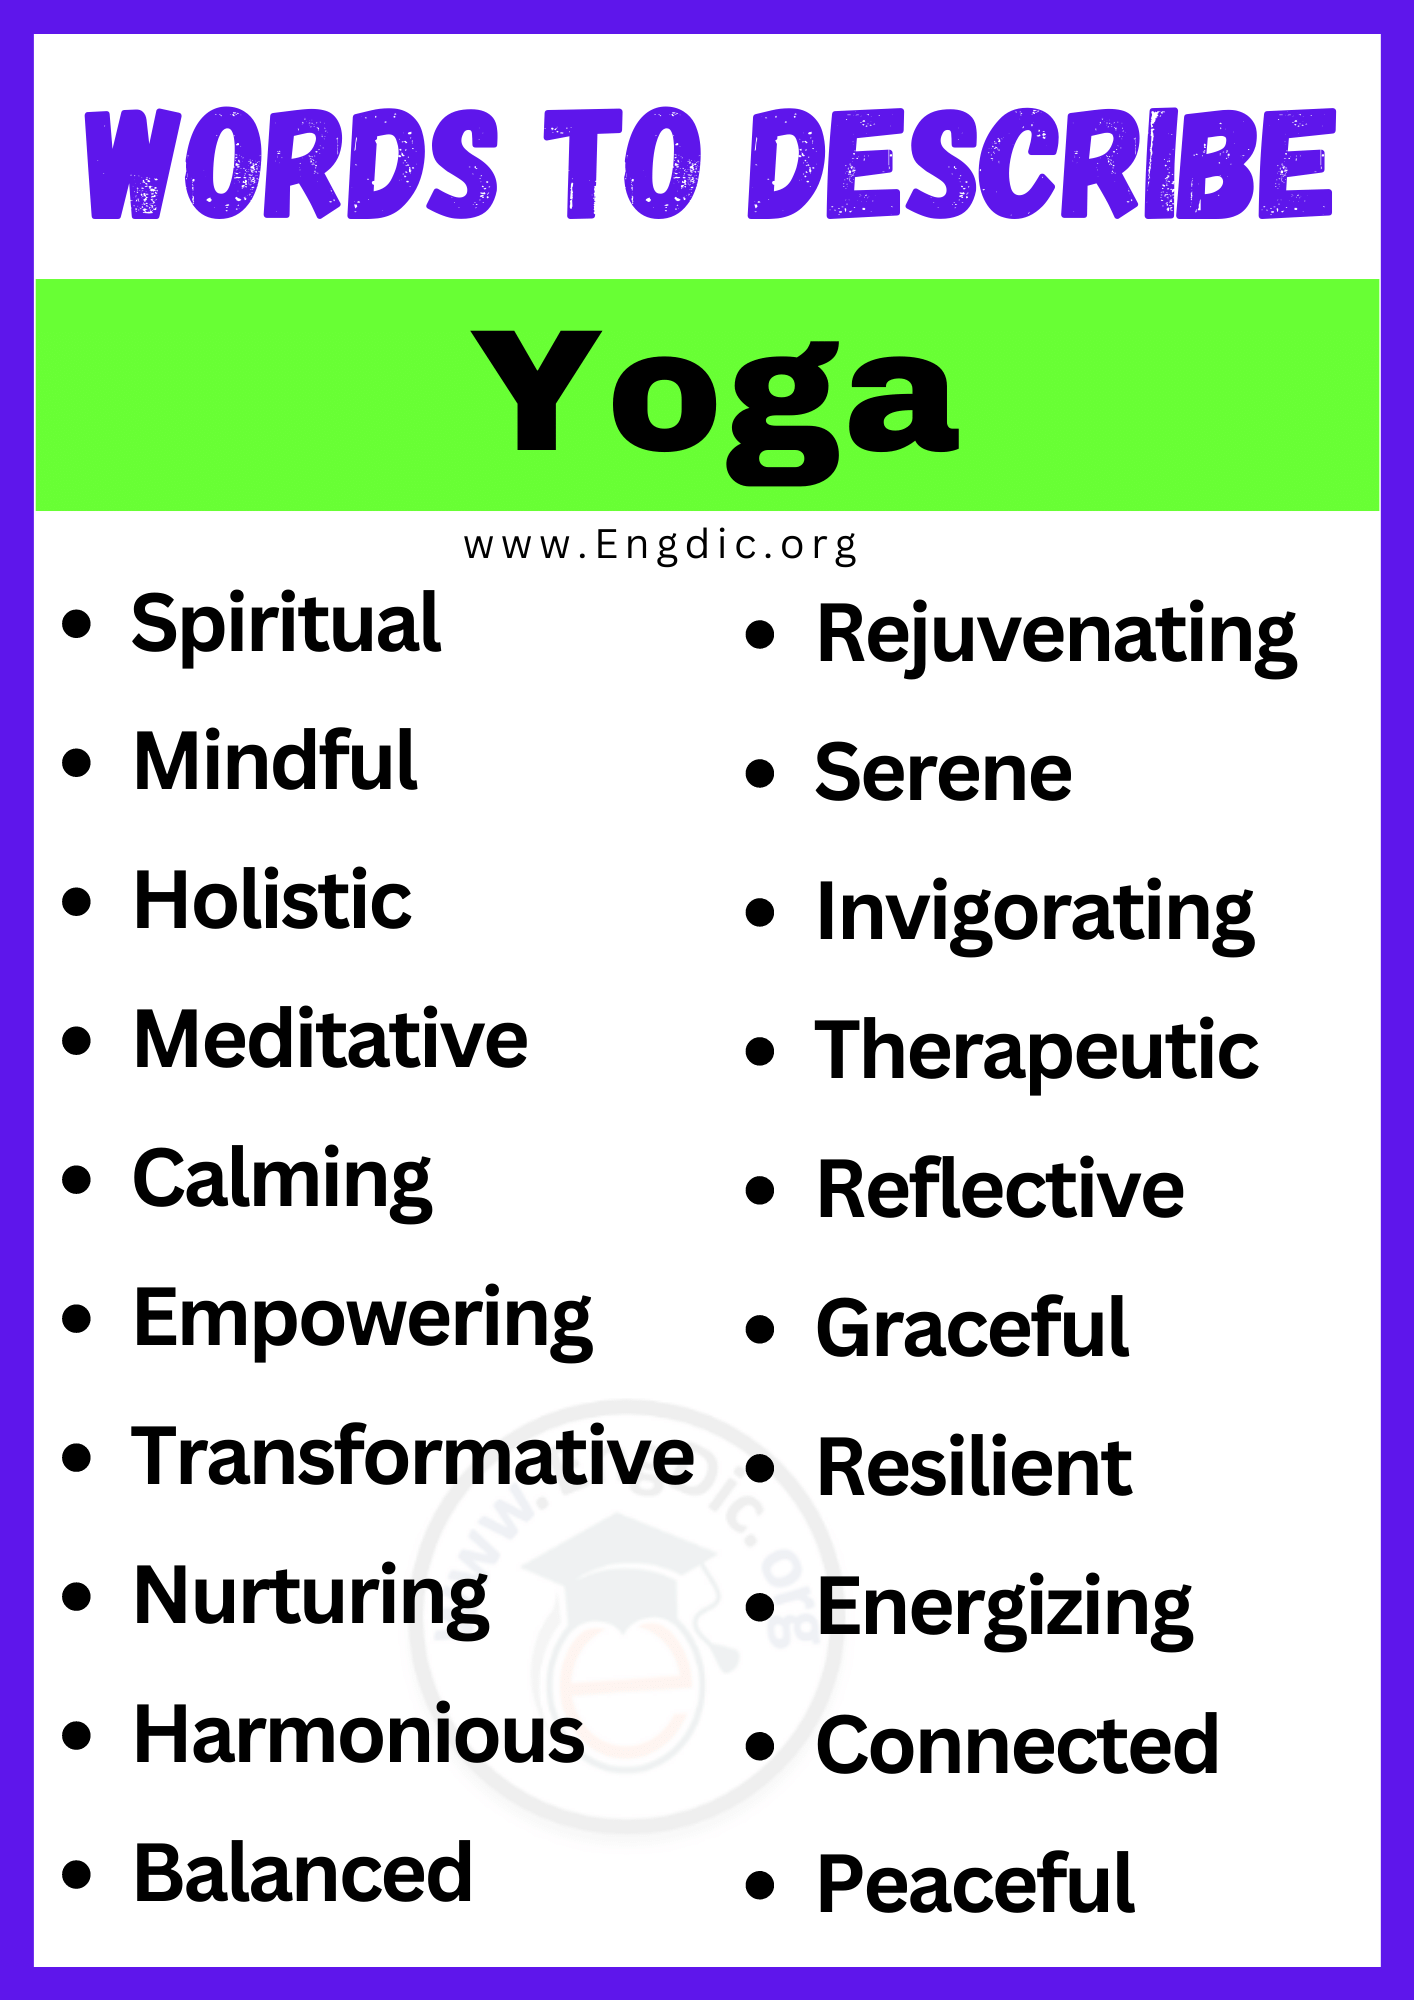 Words to Describe Yoga